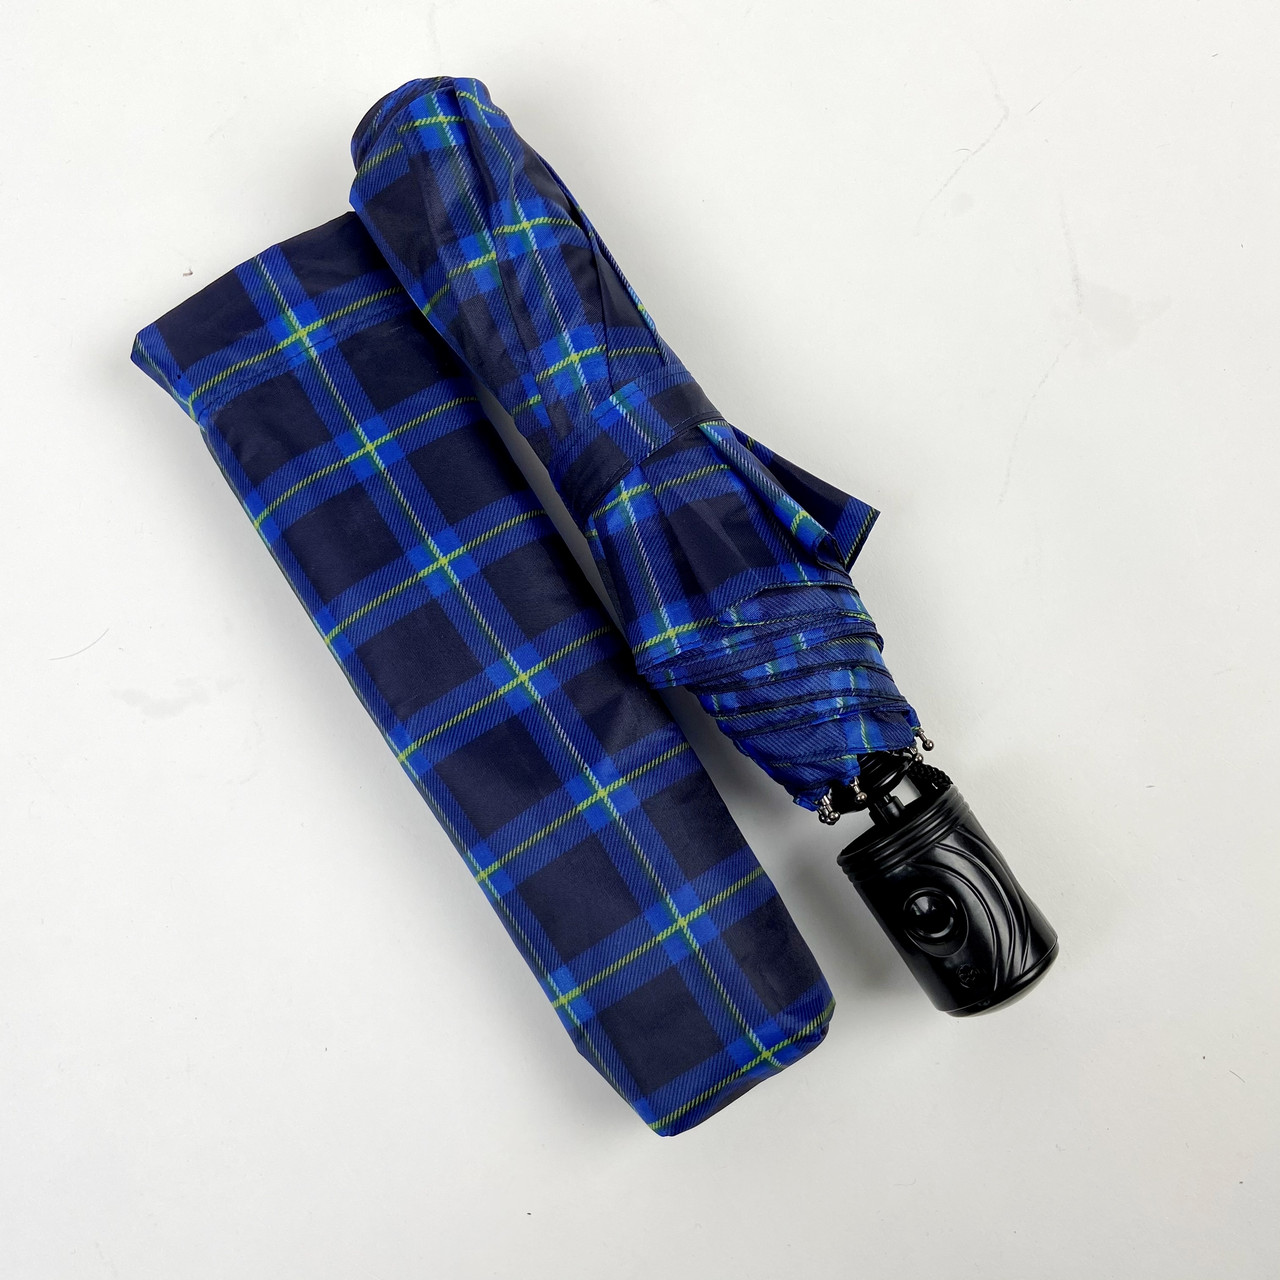 Жіноча складана парасолька напівавтомат S&L 98 см синя - фото 5